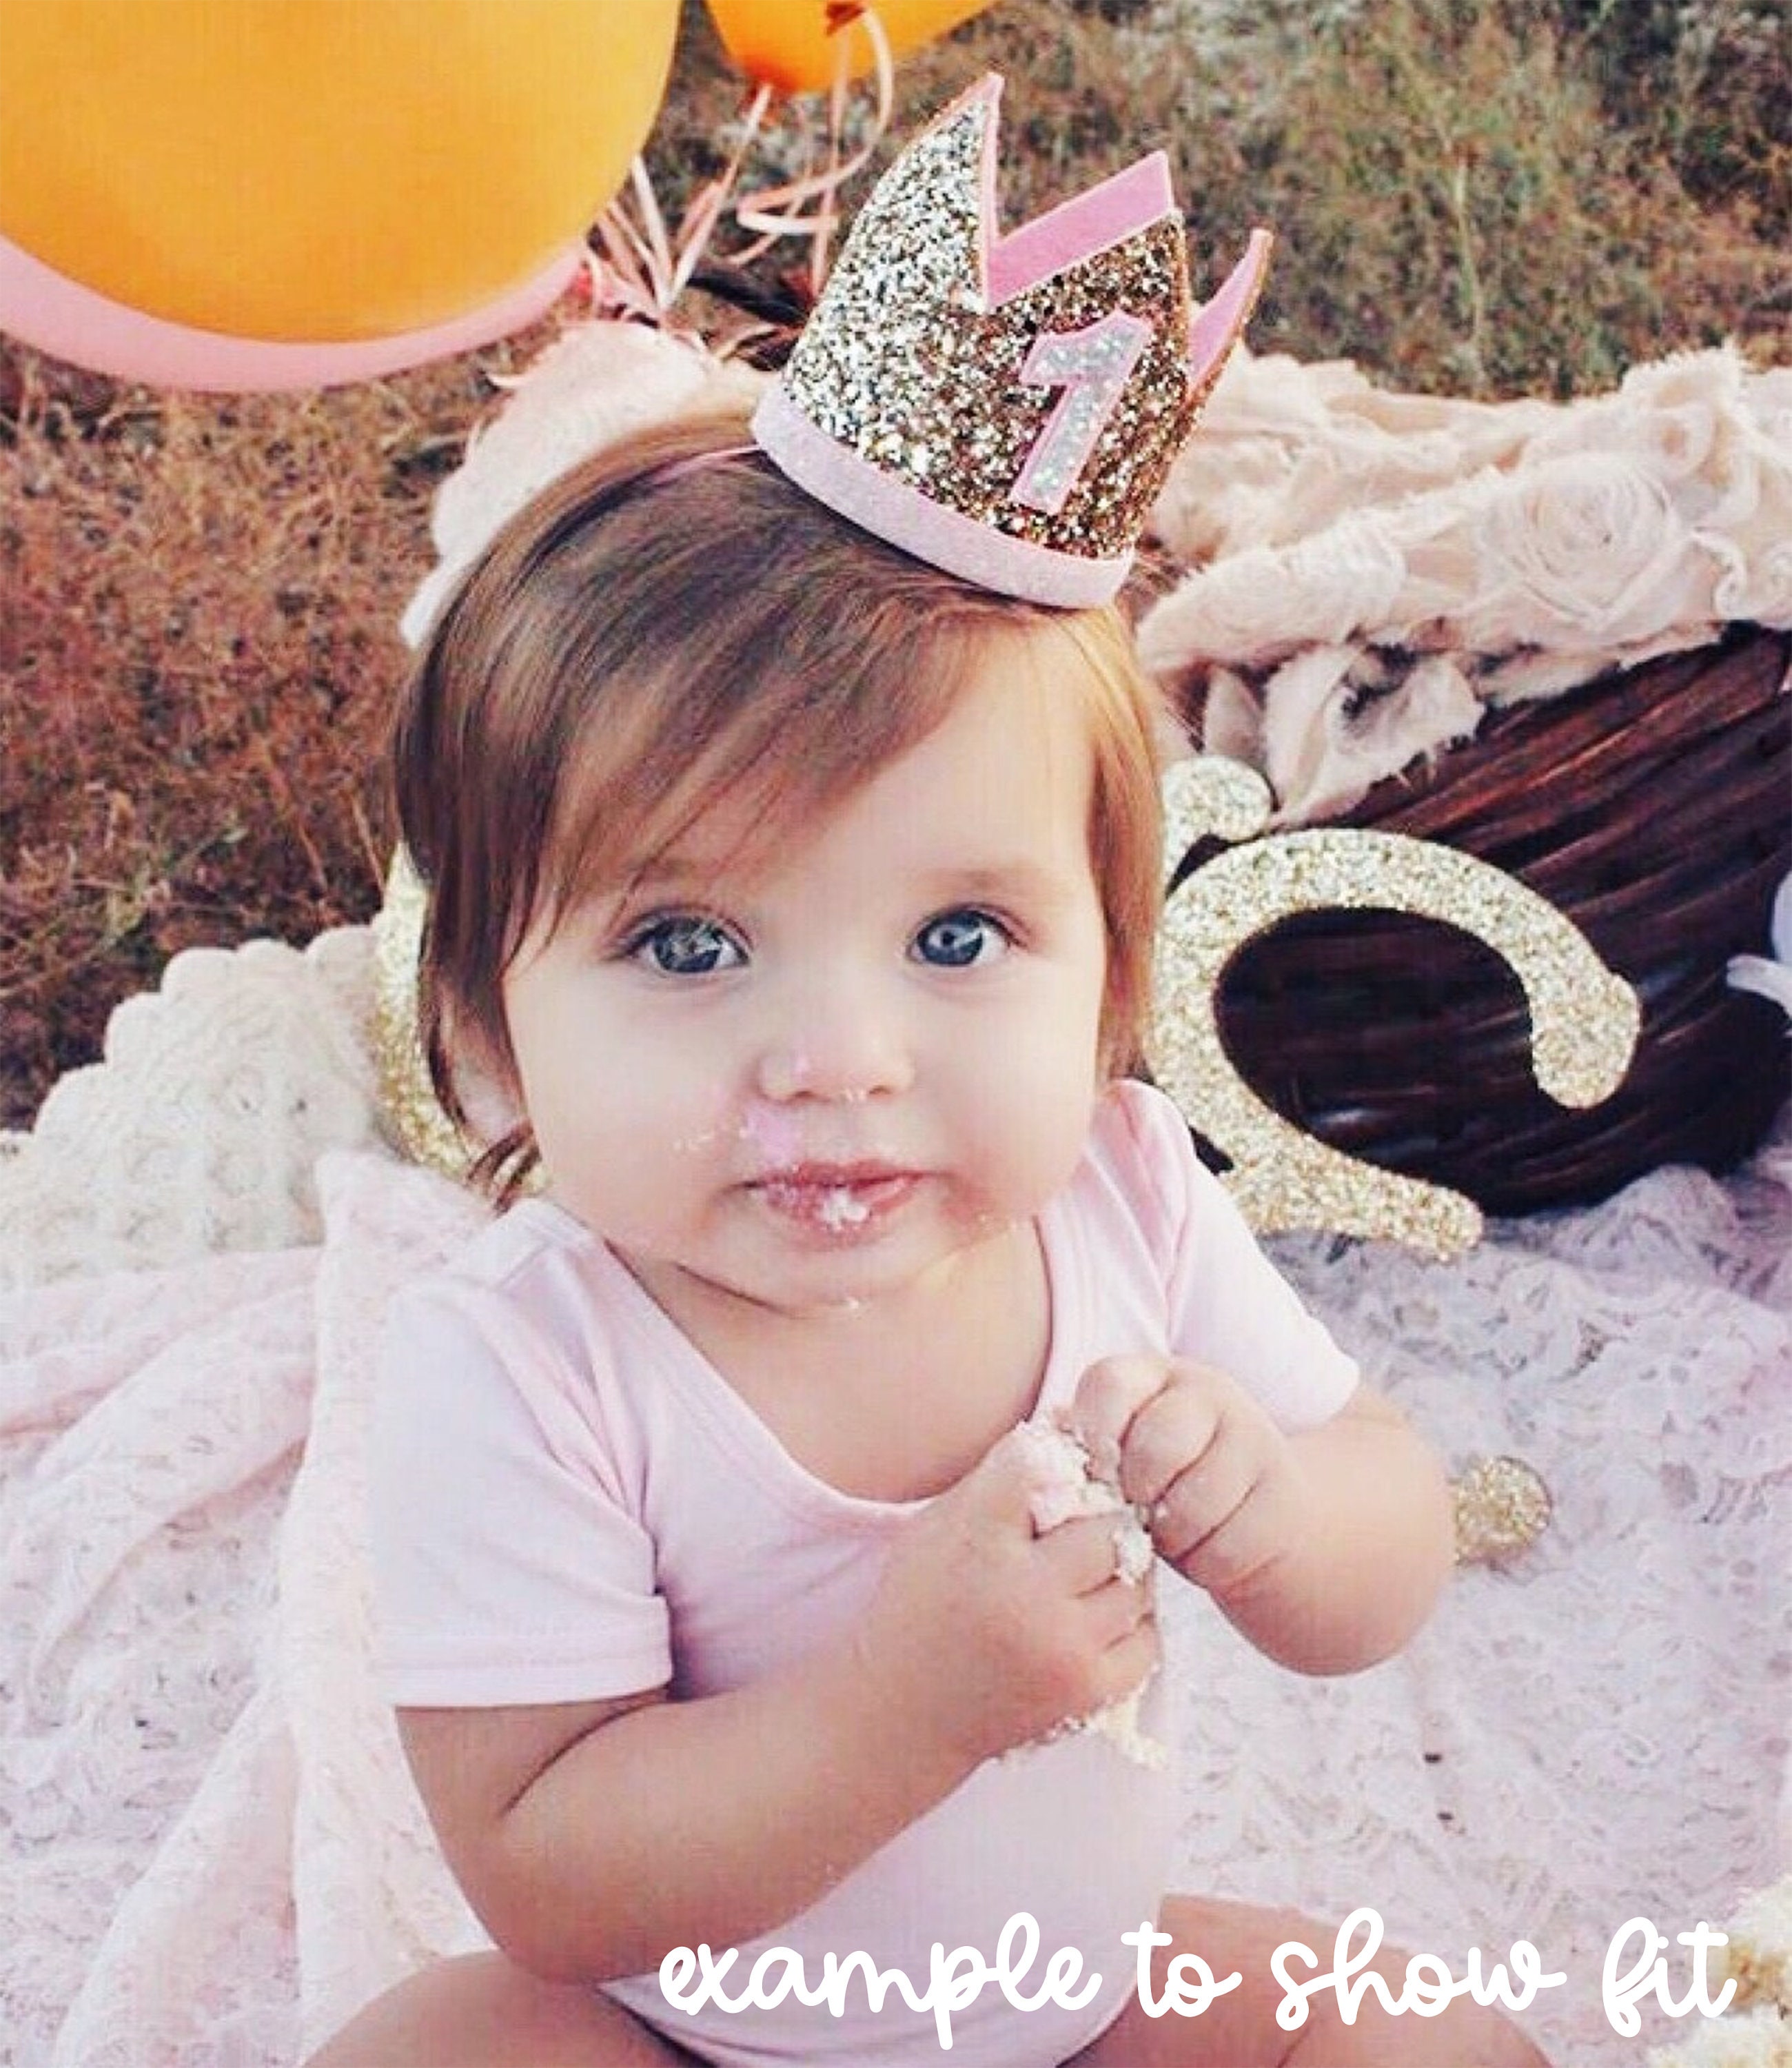 Corona de purpurina para 1er cumpleaños, corona de primer cumpleaños,  regalo de niño niña, accesorios de cabina de fotos, sombrero de fiesta de  1er cumpleaños MFZFUKR BST3034159-1